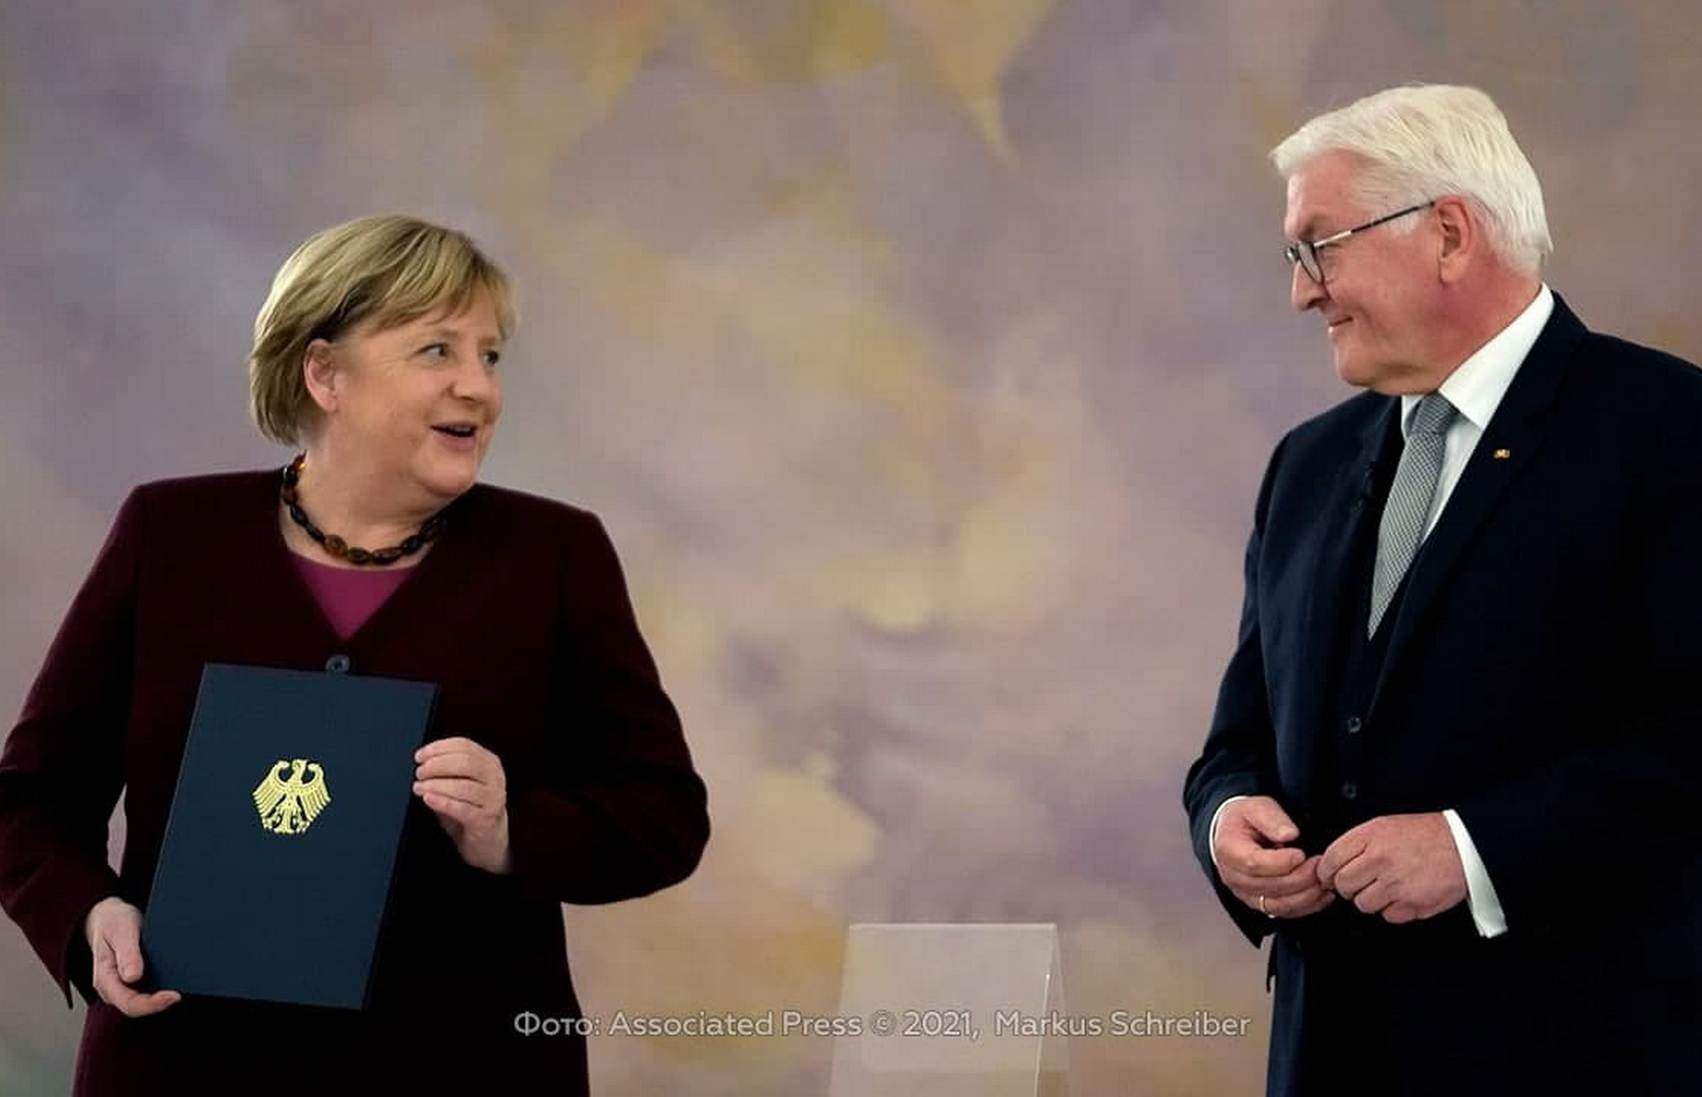 Штайнмайер принял отставку Меркель и попросил её остаться на посту канцлера